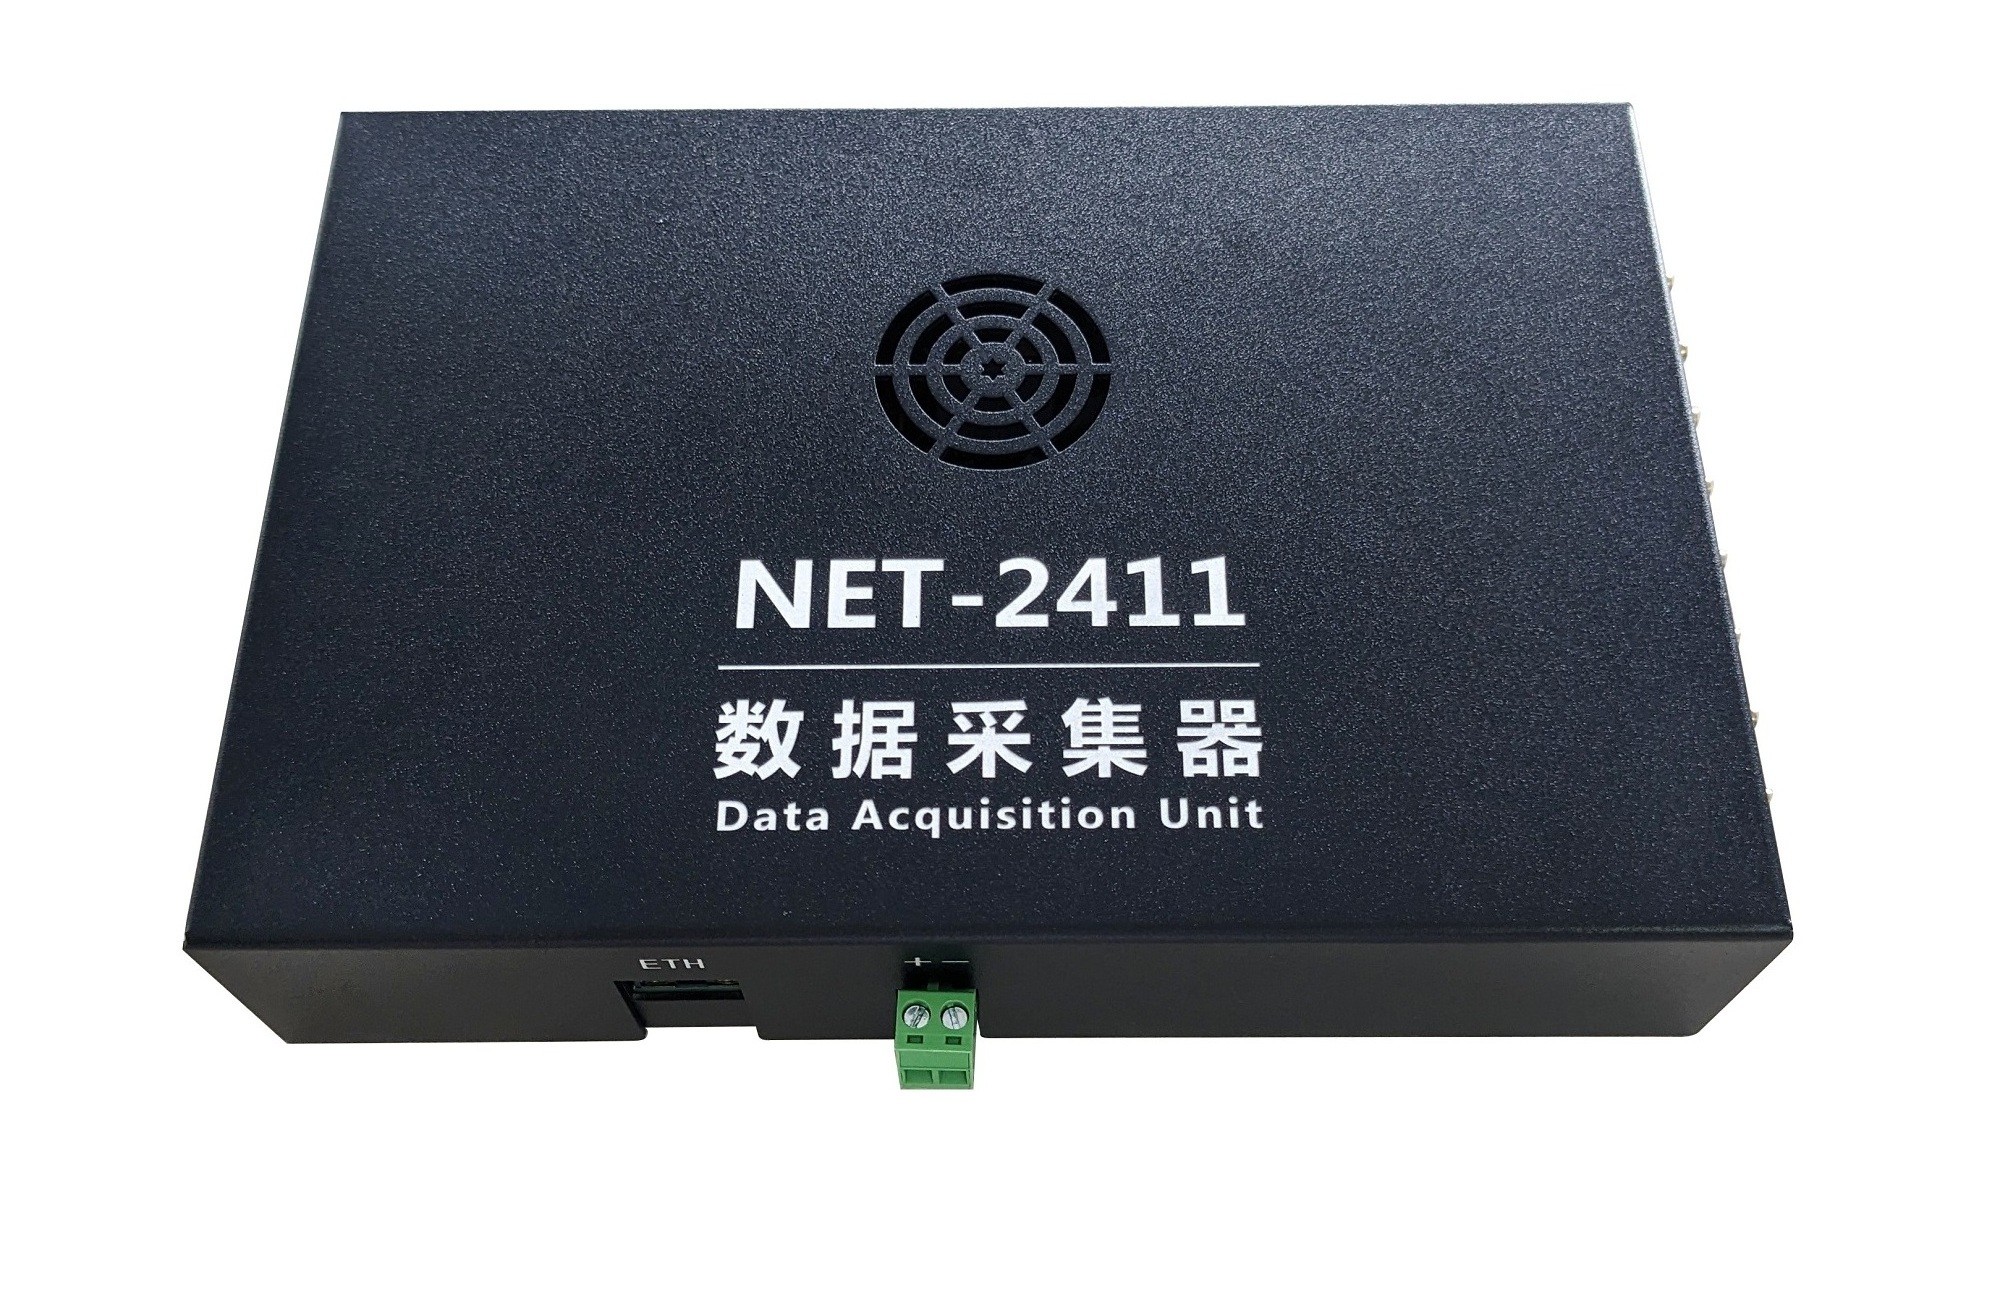 NET-2411